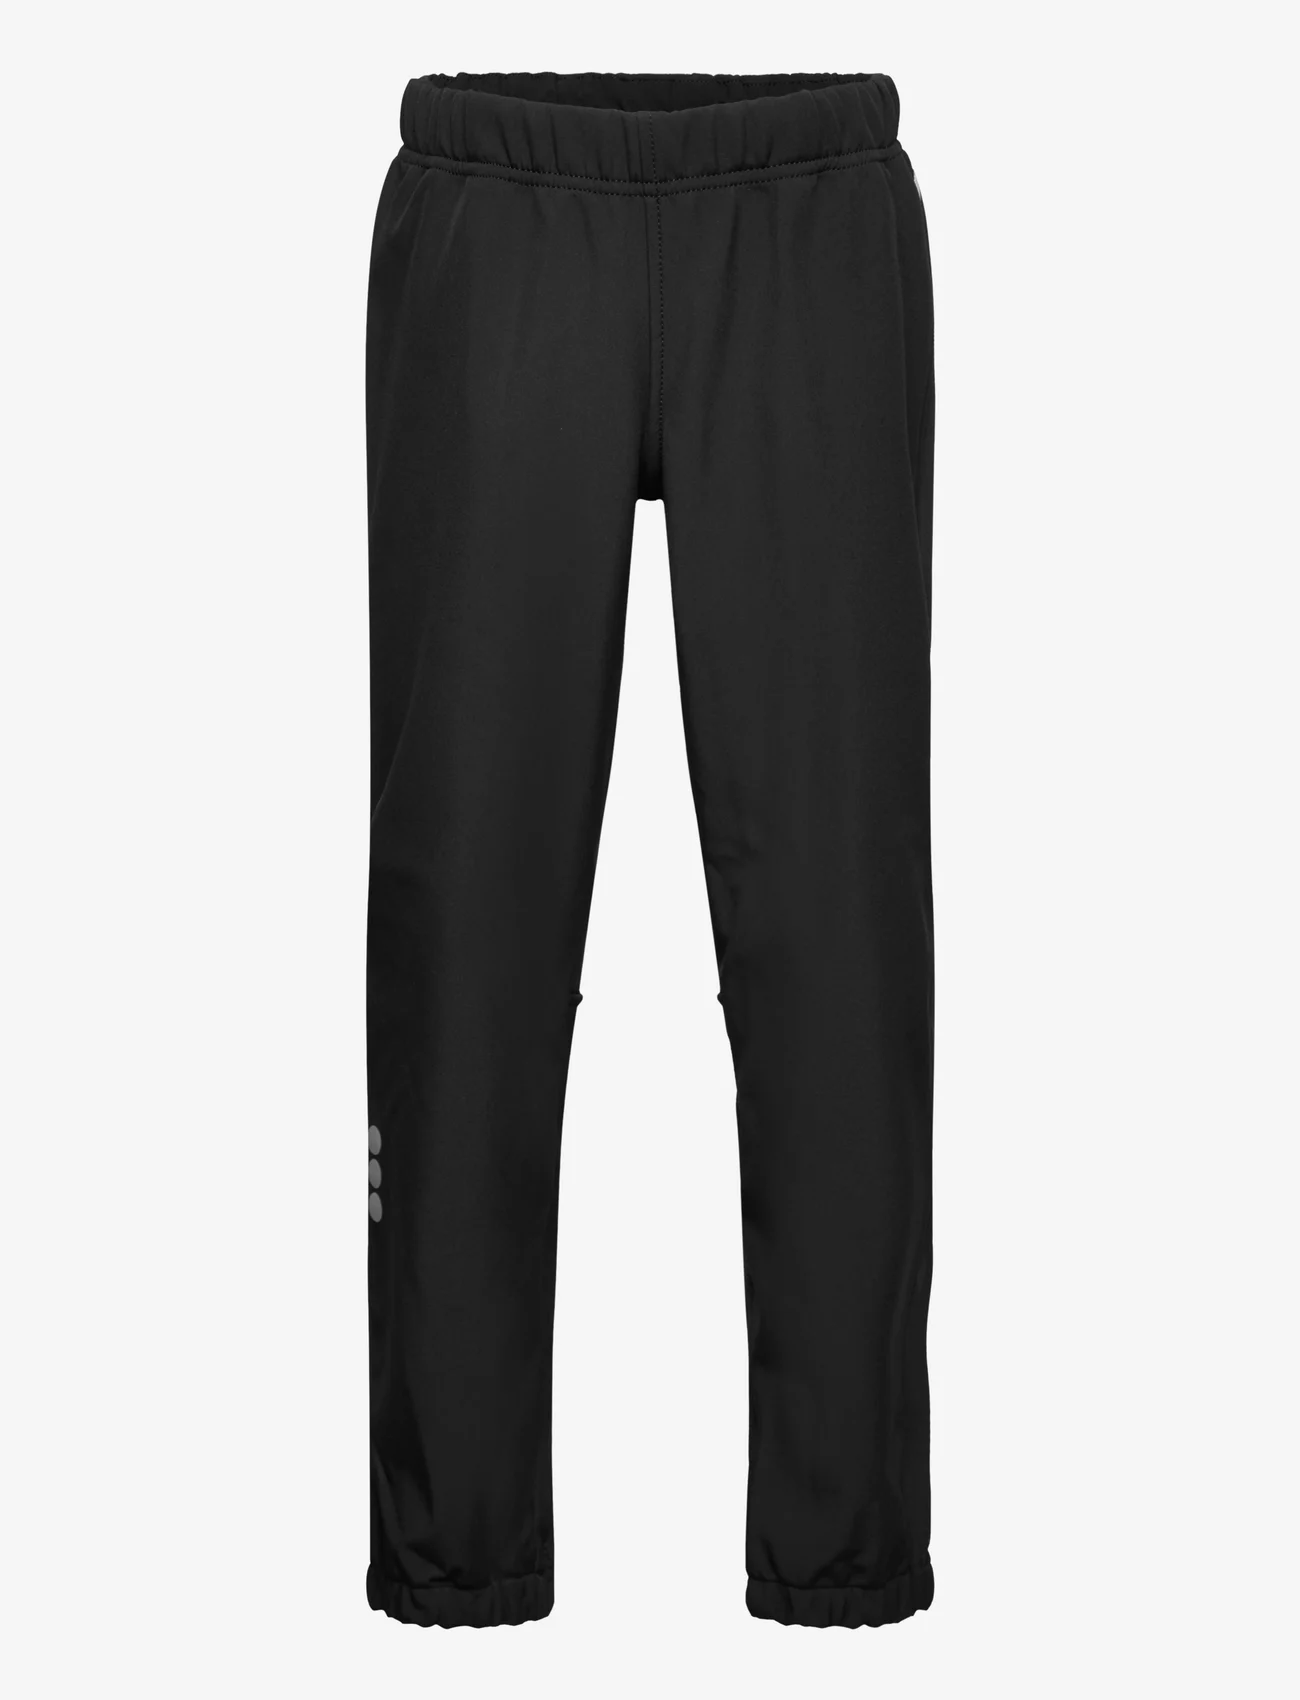 Reima - Softshell pants, Oikotie - mažiausios kainos - black - 0